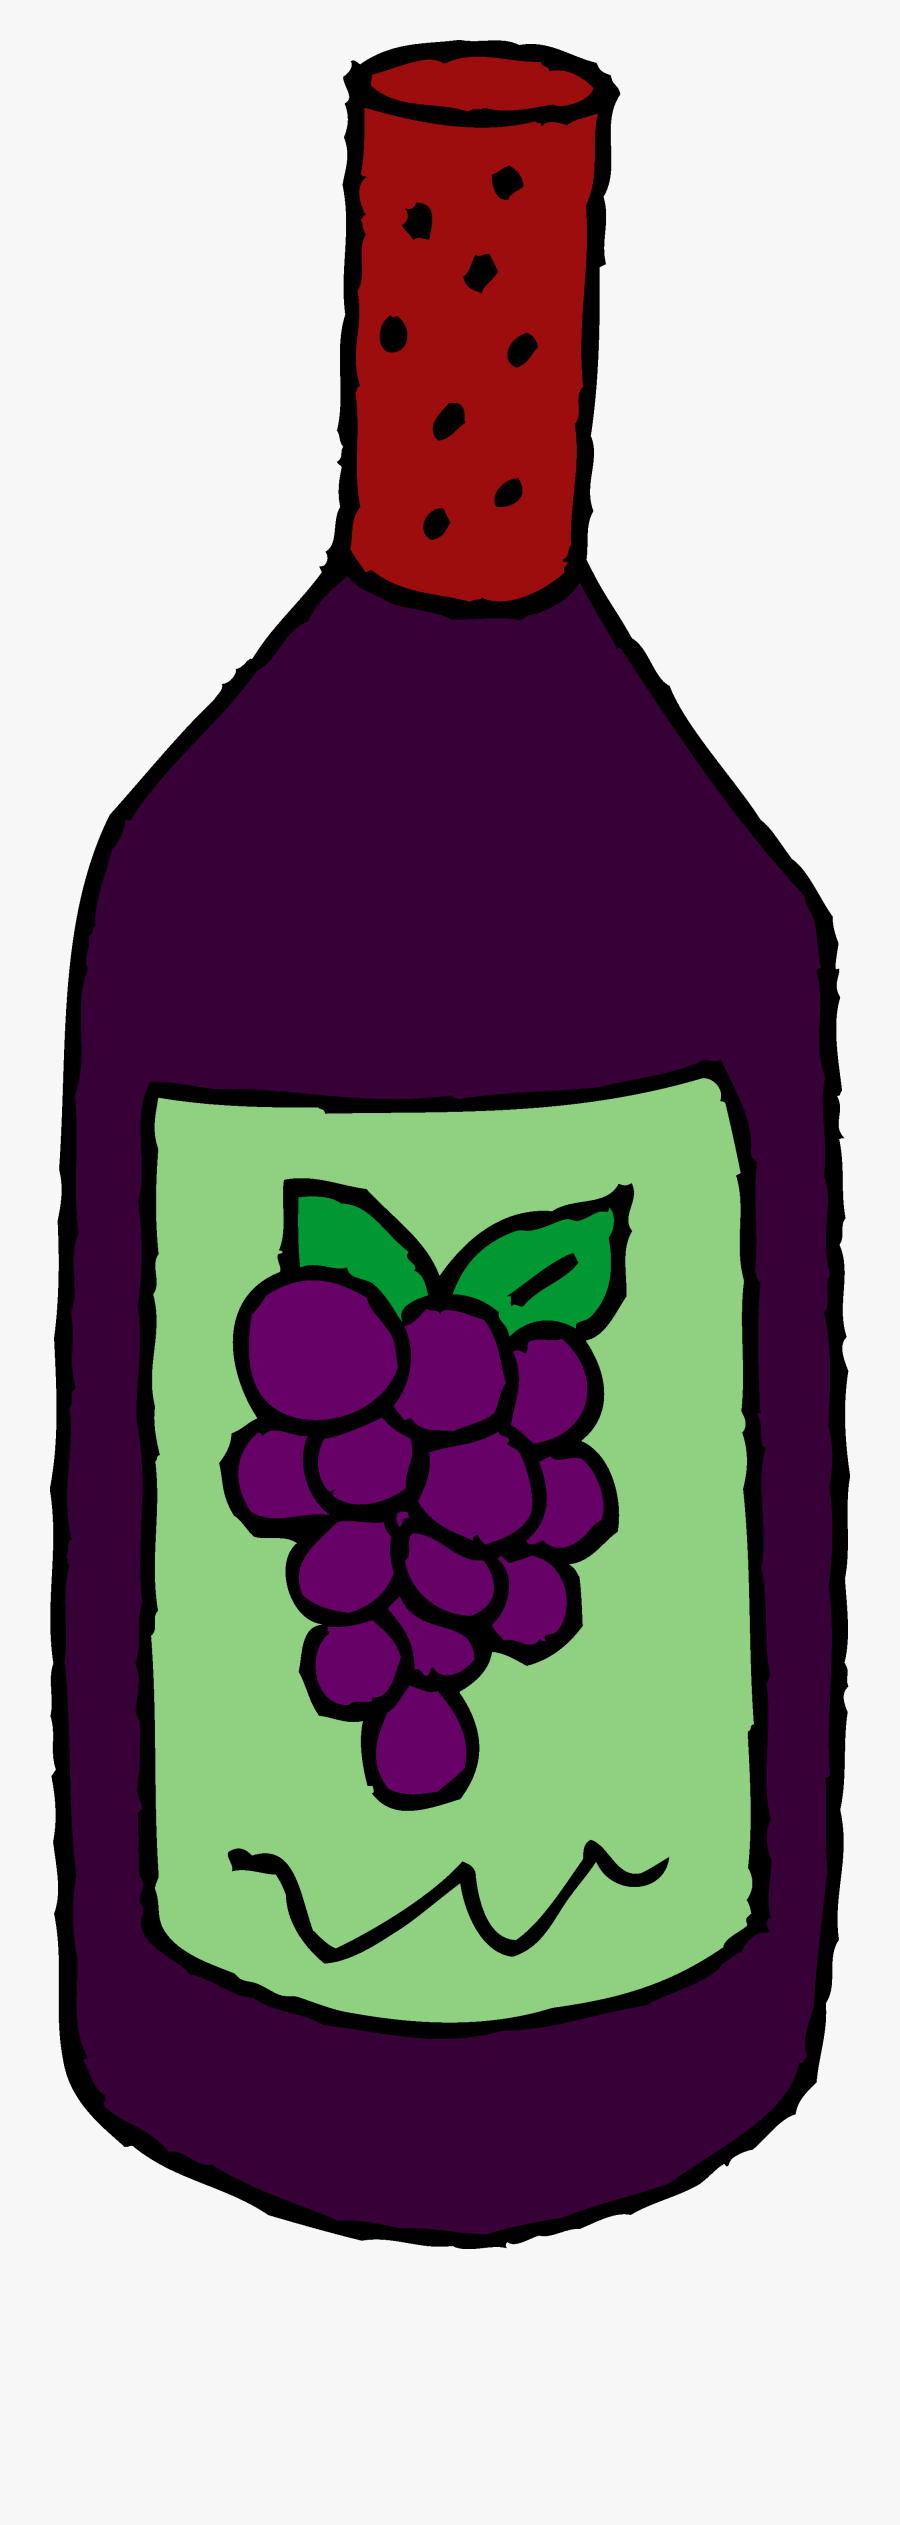 Grape Juice Bottle Clipart, Transparent Clipart